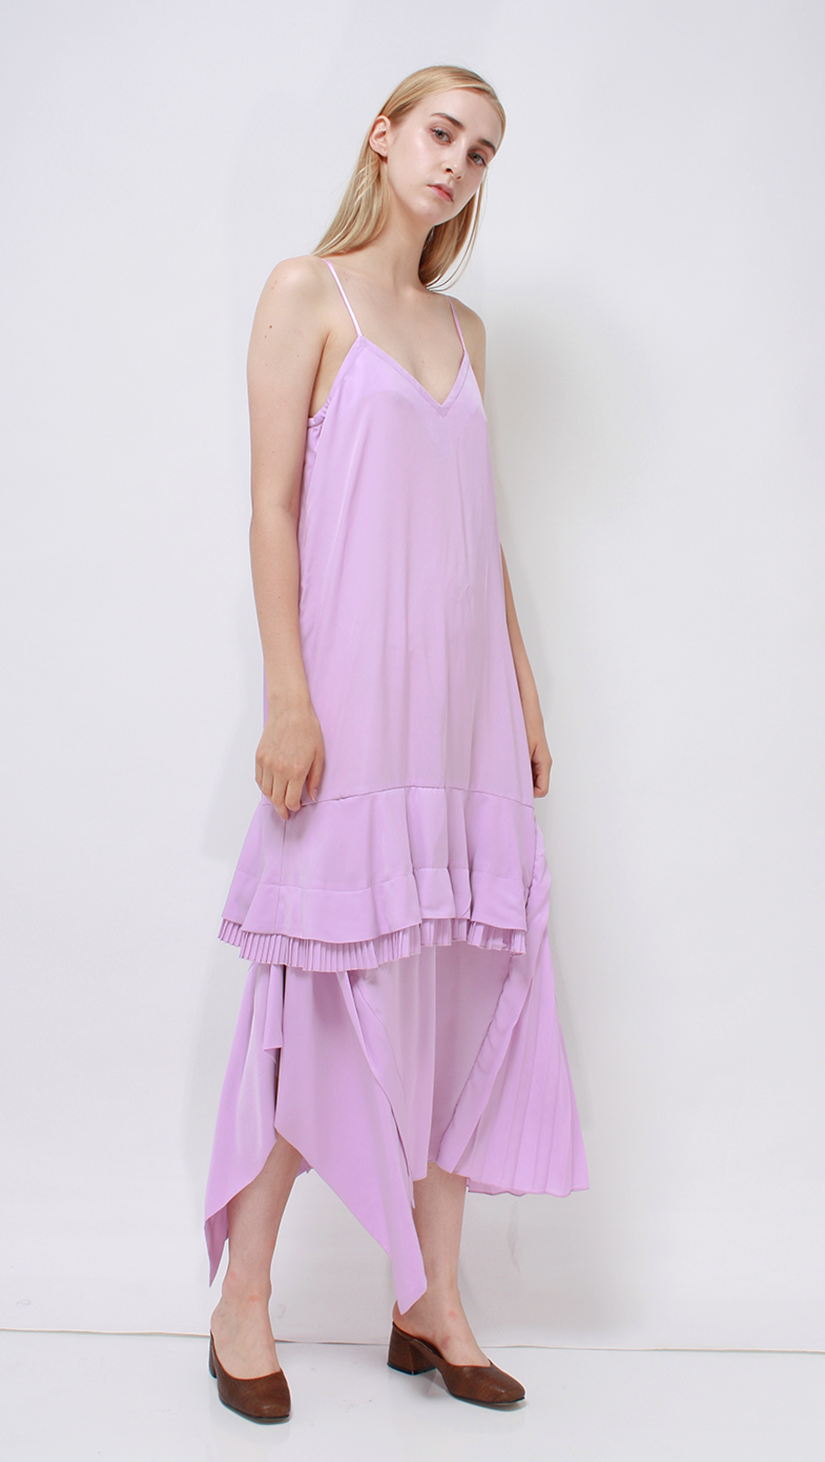 Lesha Dress, a lightweight dress in Pink